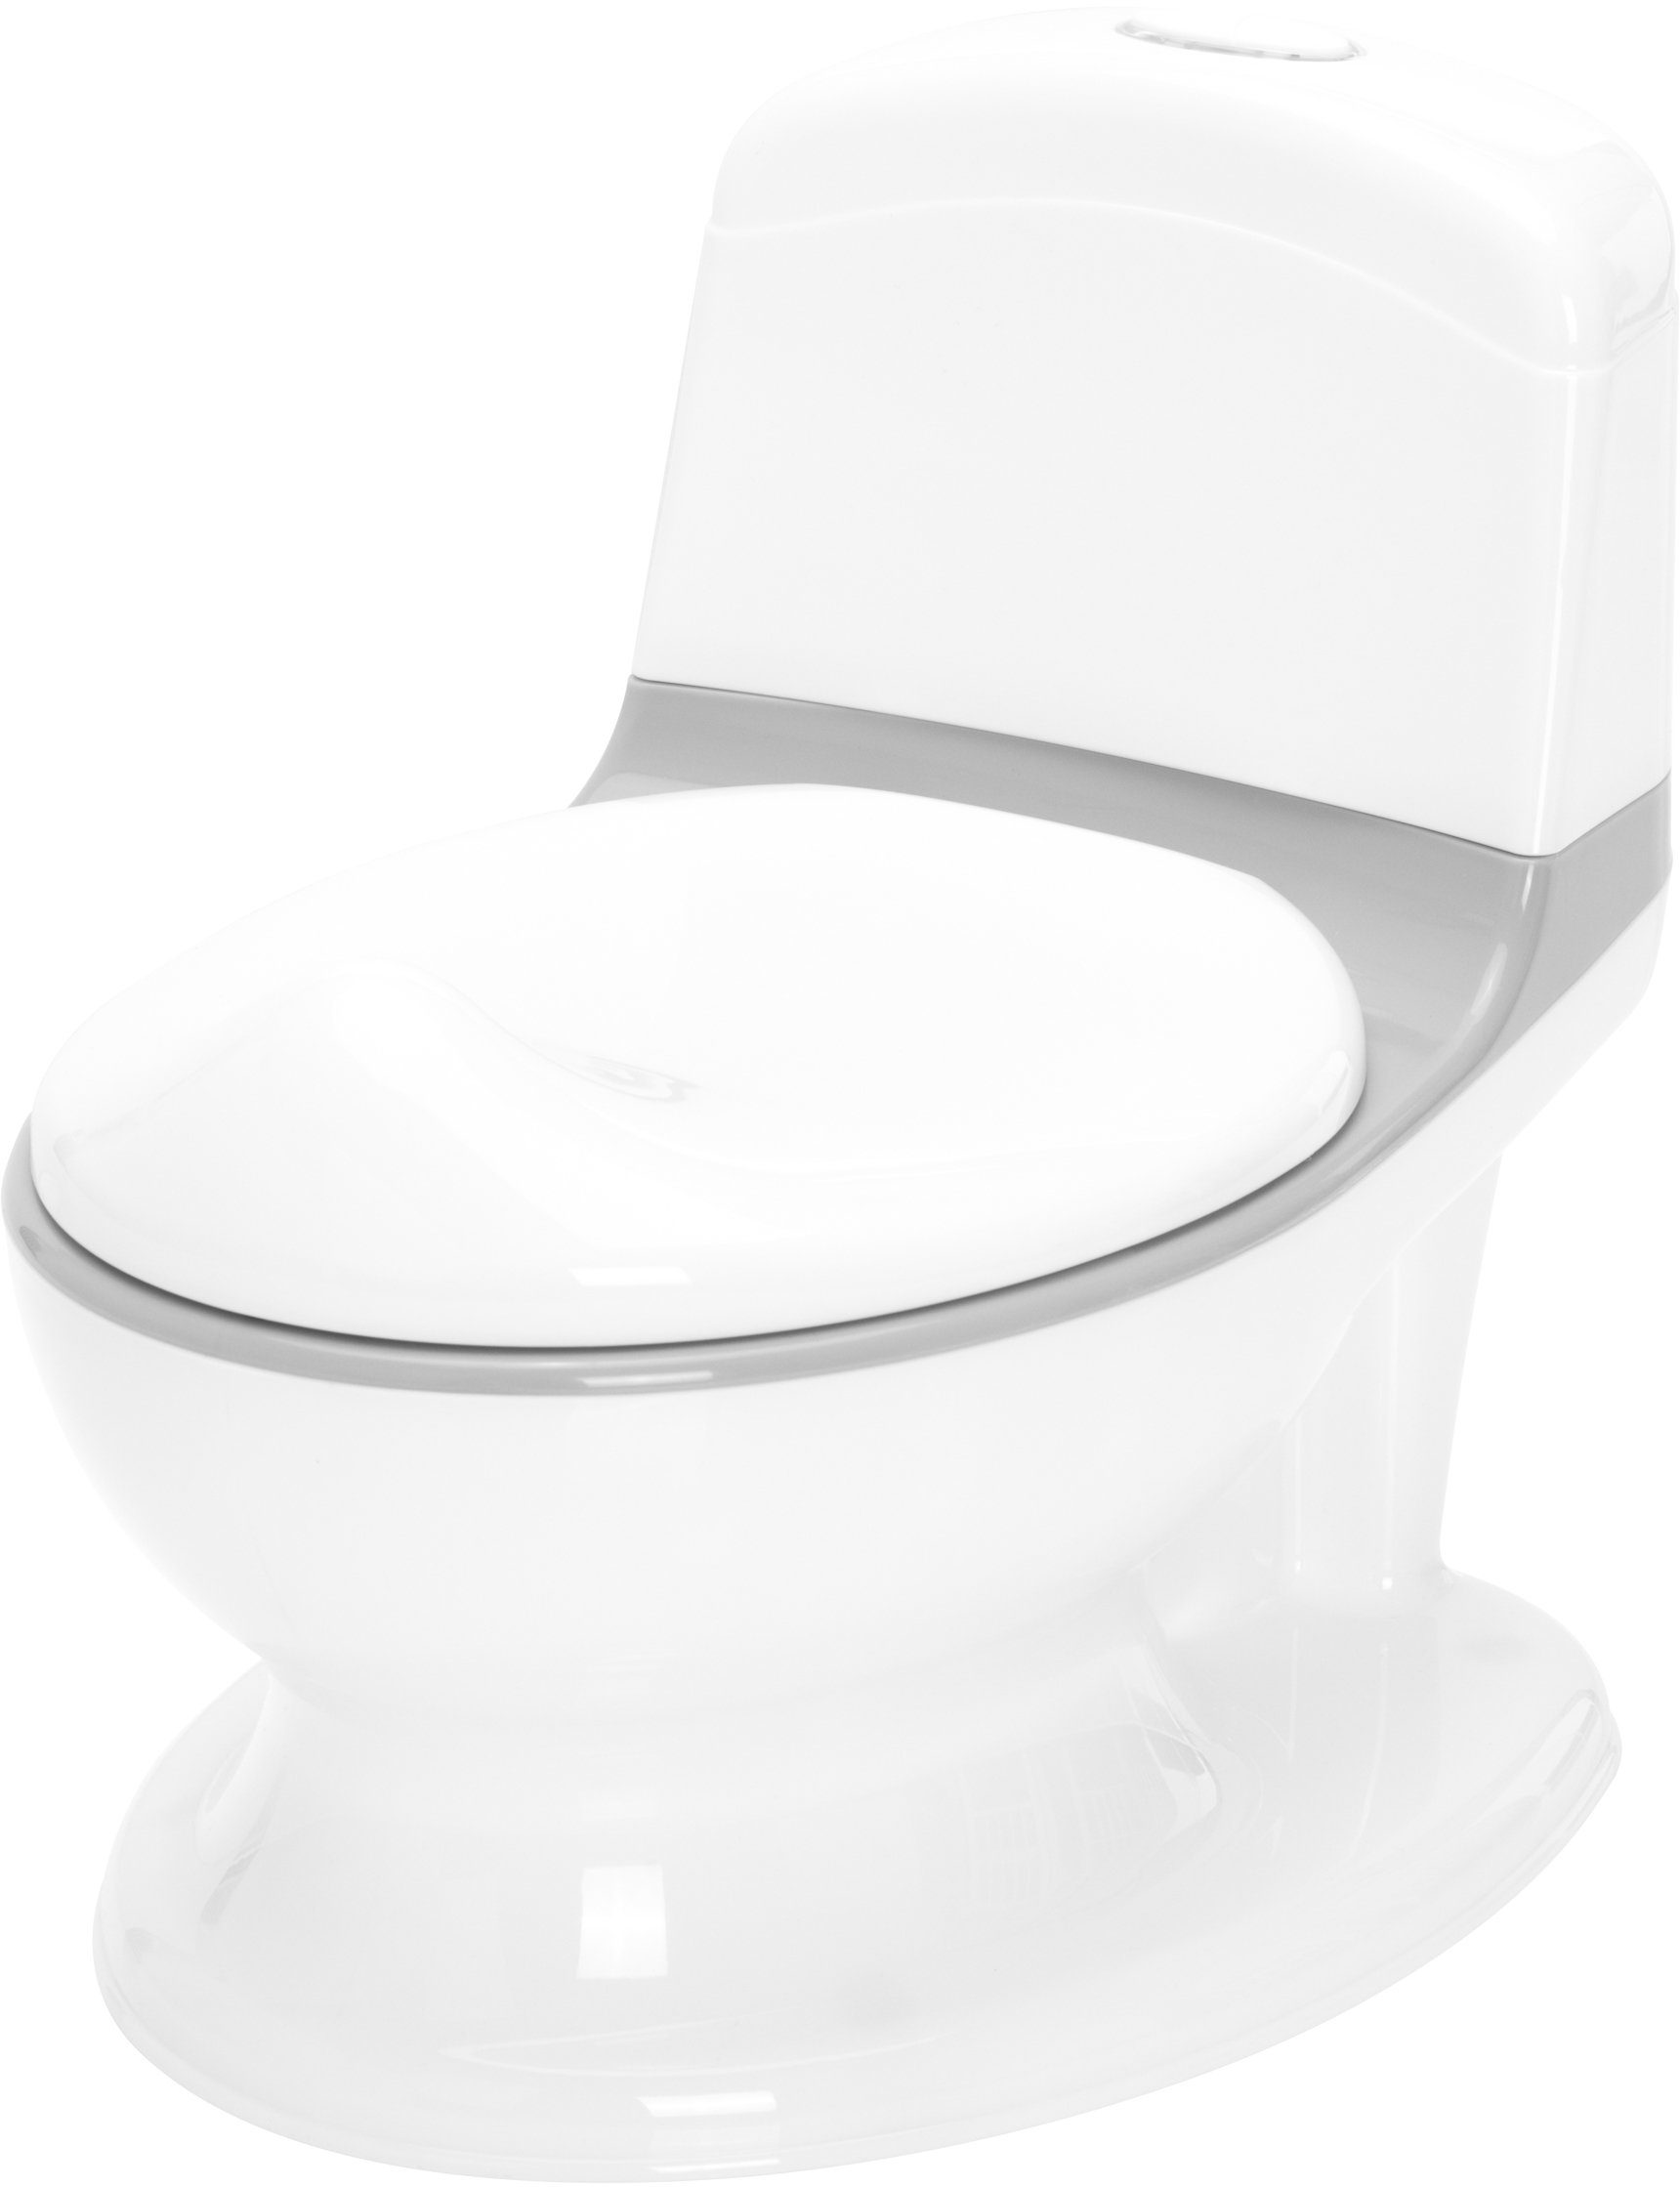 Fillikid Töpfchen Mini Lichteffekte Sound- weiß/grau, und inkl. Toilette